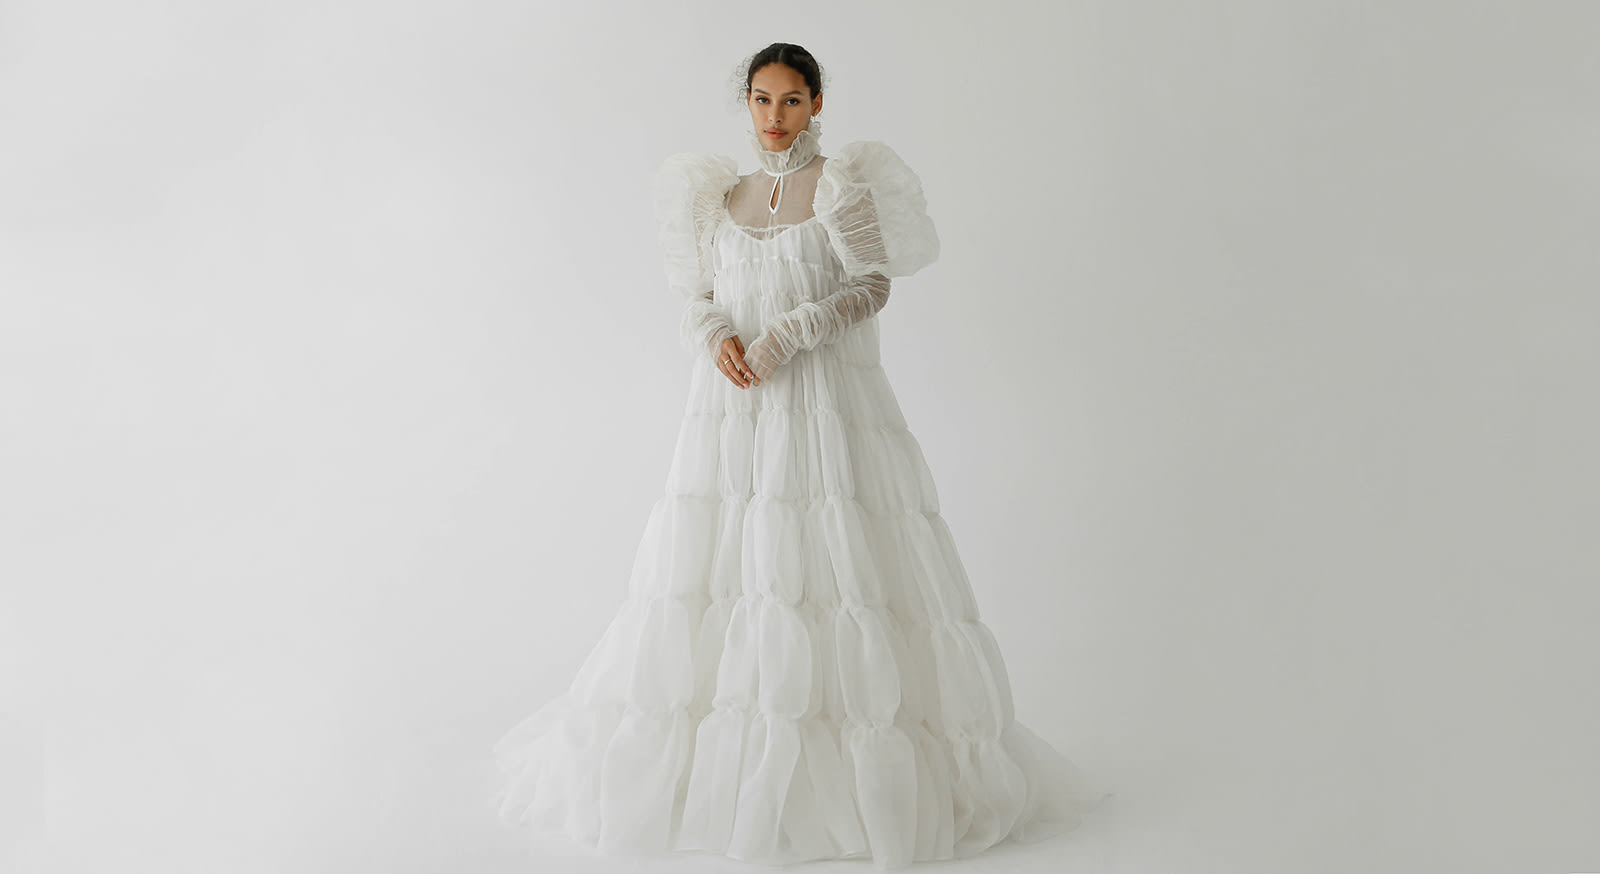 بعيدًا عن الفستان الأبيض التقليدي.. ما هي أحدث صيحة لأزياء الزفاف في عام 2022؟